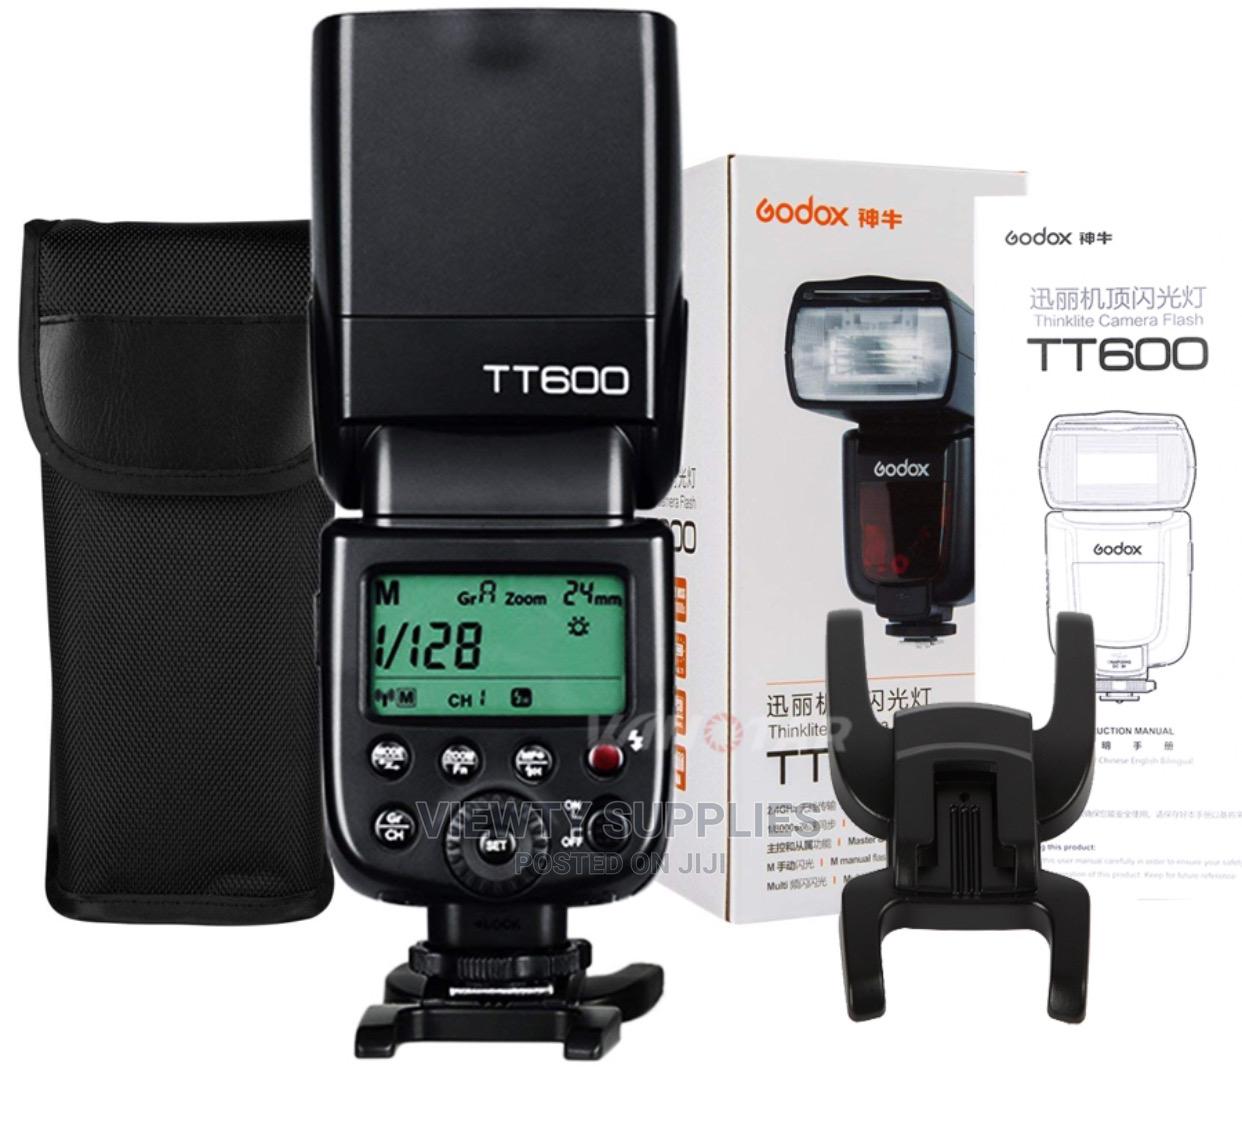 Flash Accessories Godox Tt600, Flash Canon Godox Tt600